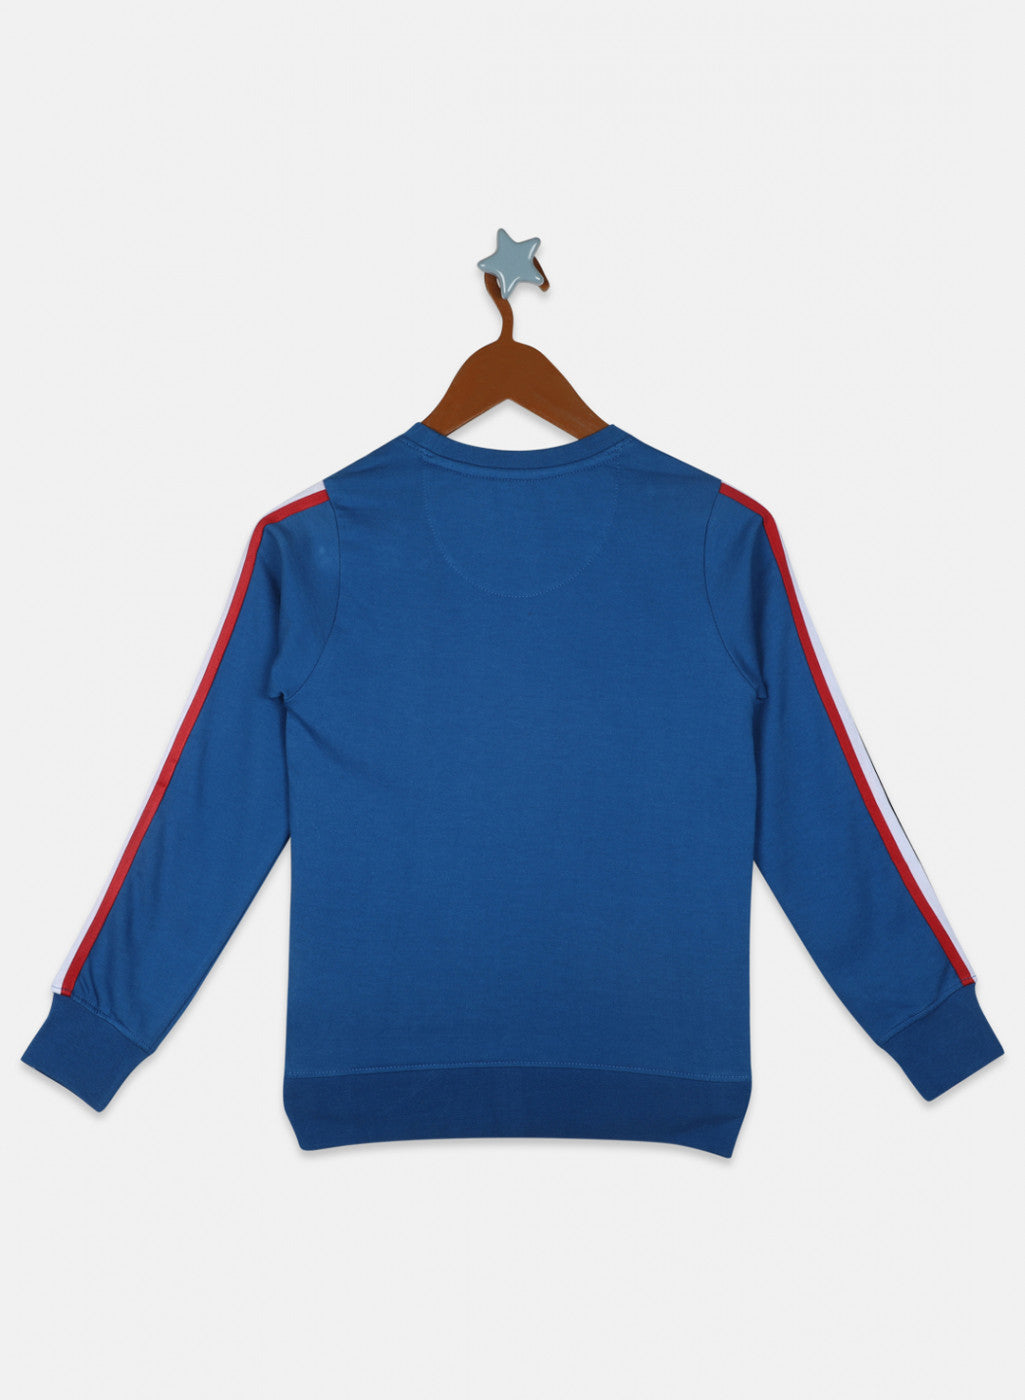 Boys Royal Blue Printed Sweatshirt